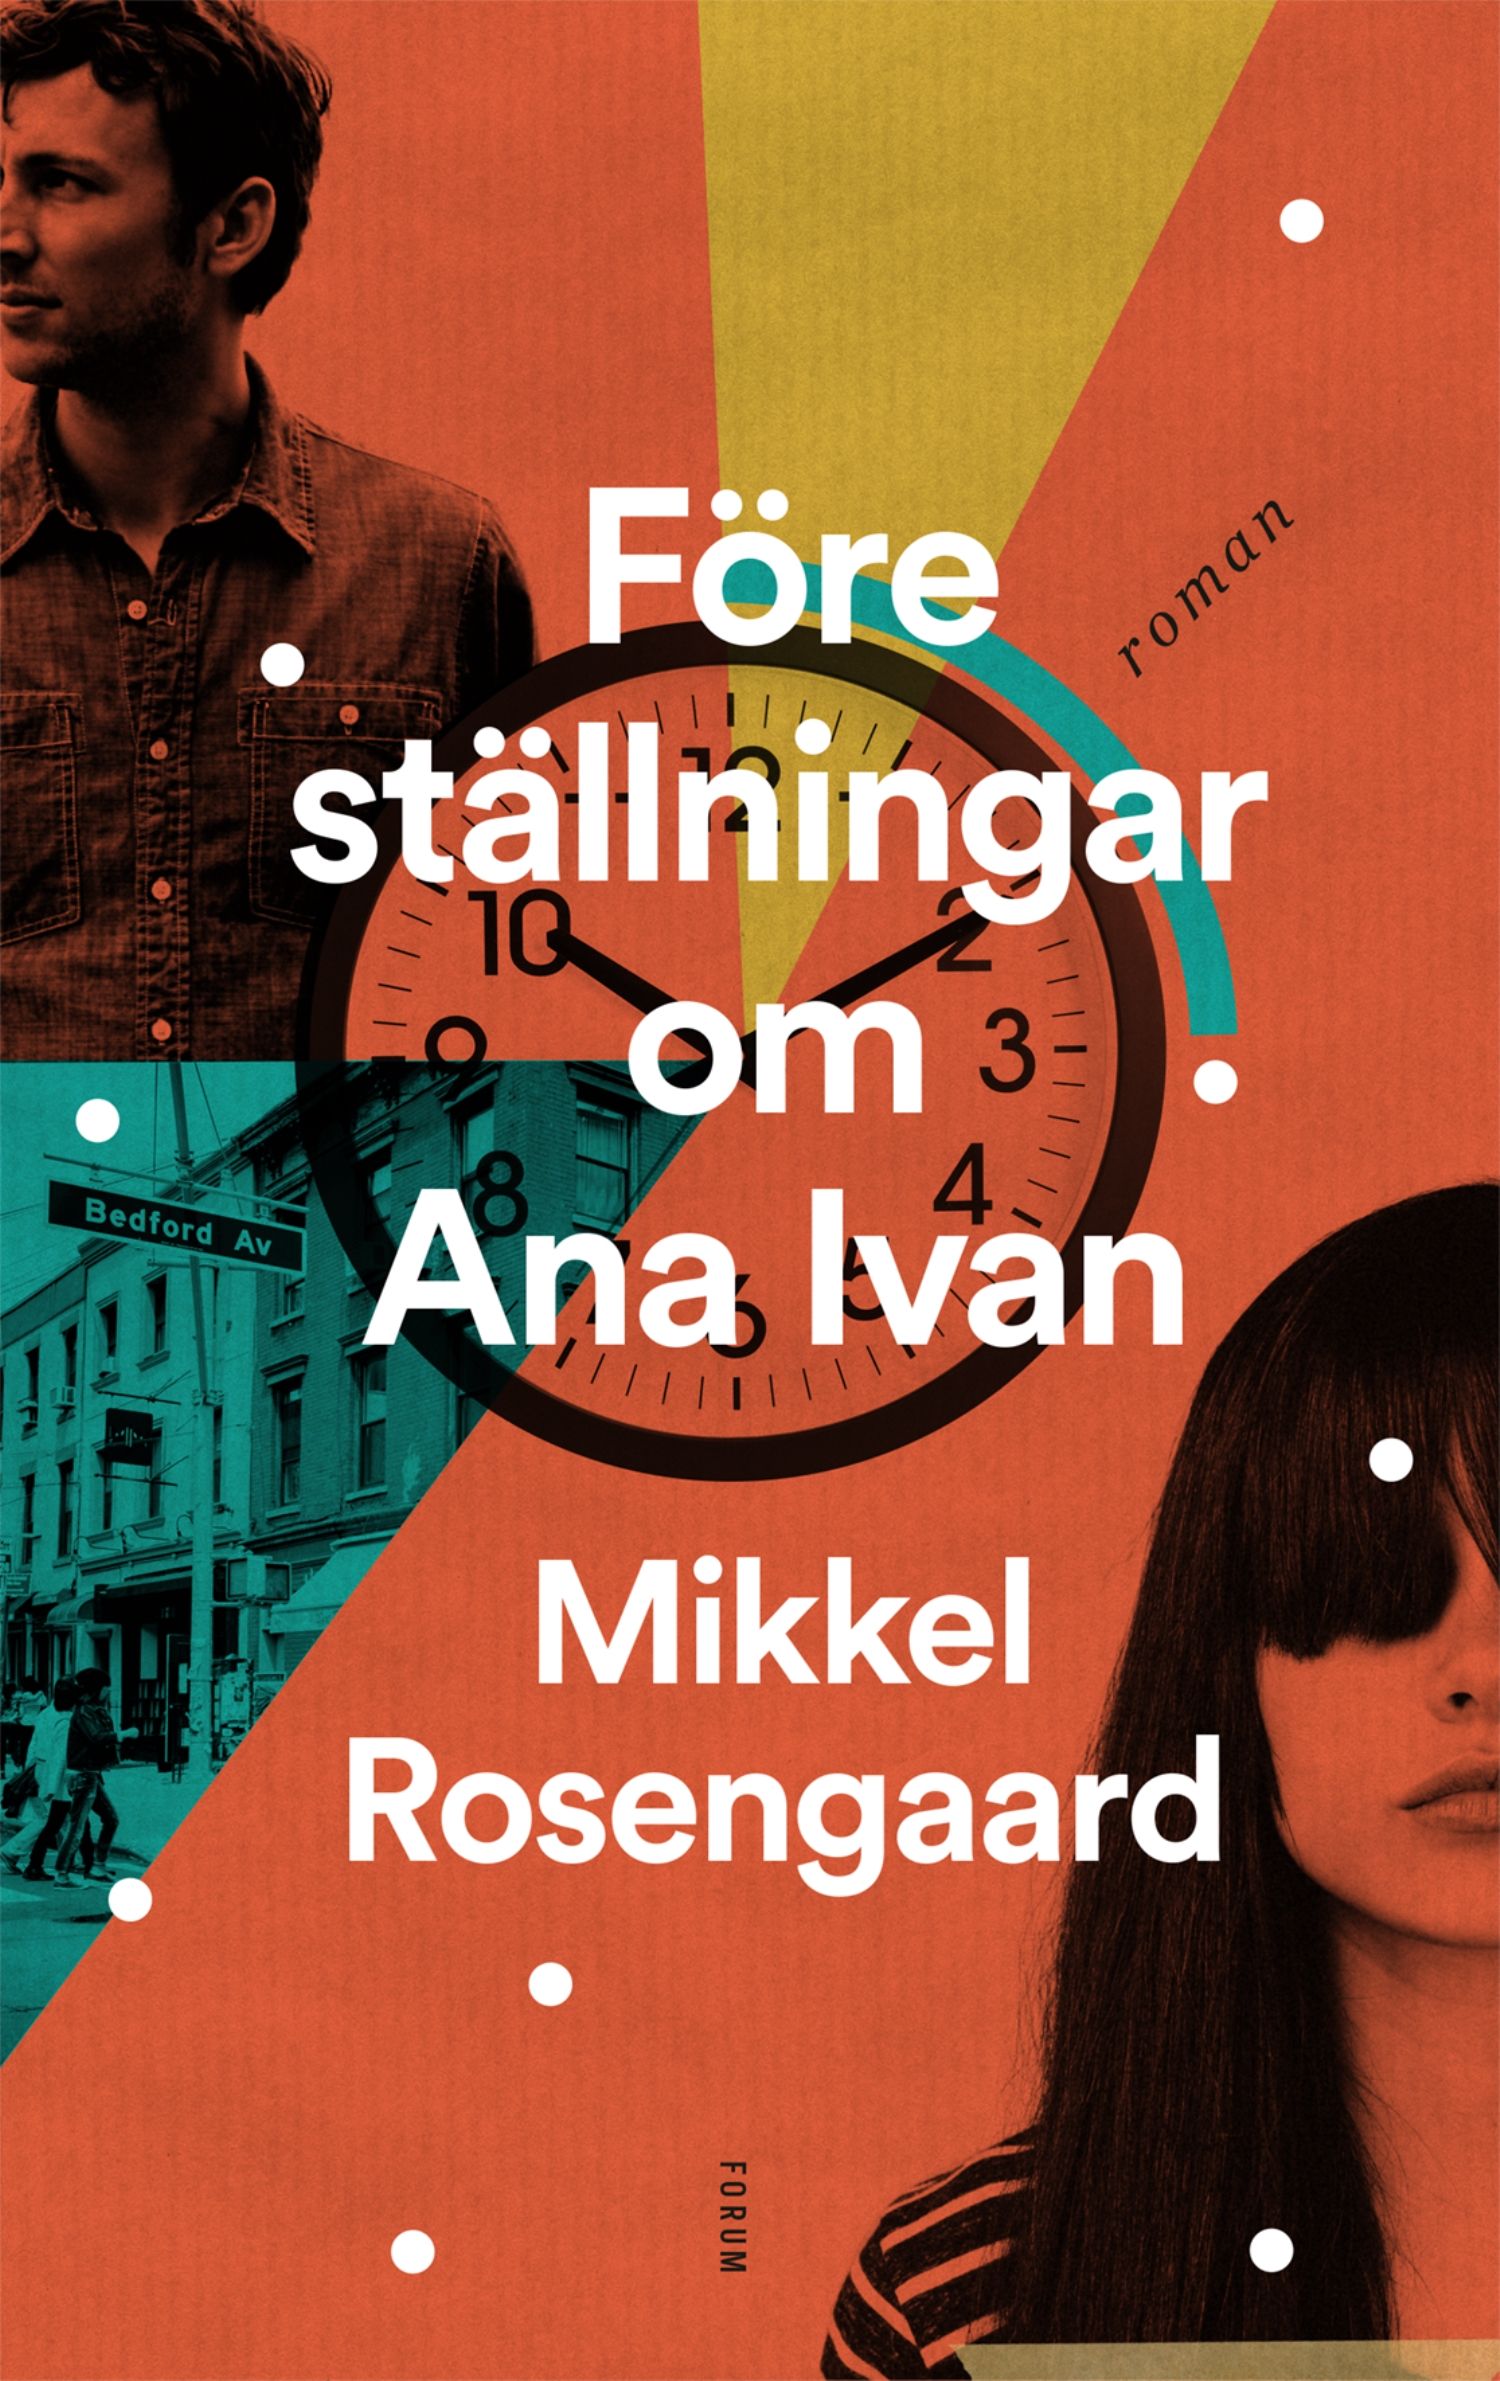 Föreställningar om Ana Ivan, e-bok av Mikkel Rosengaard